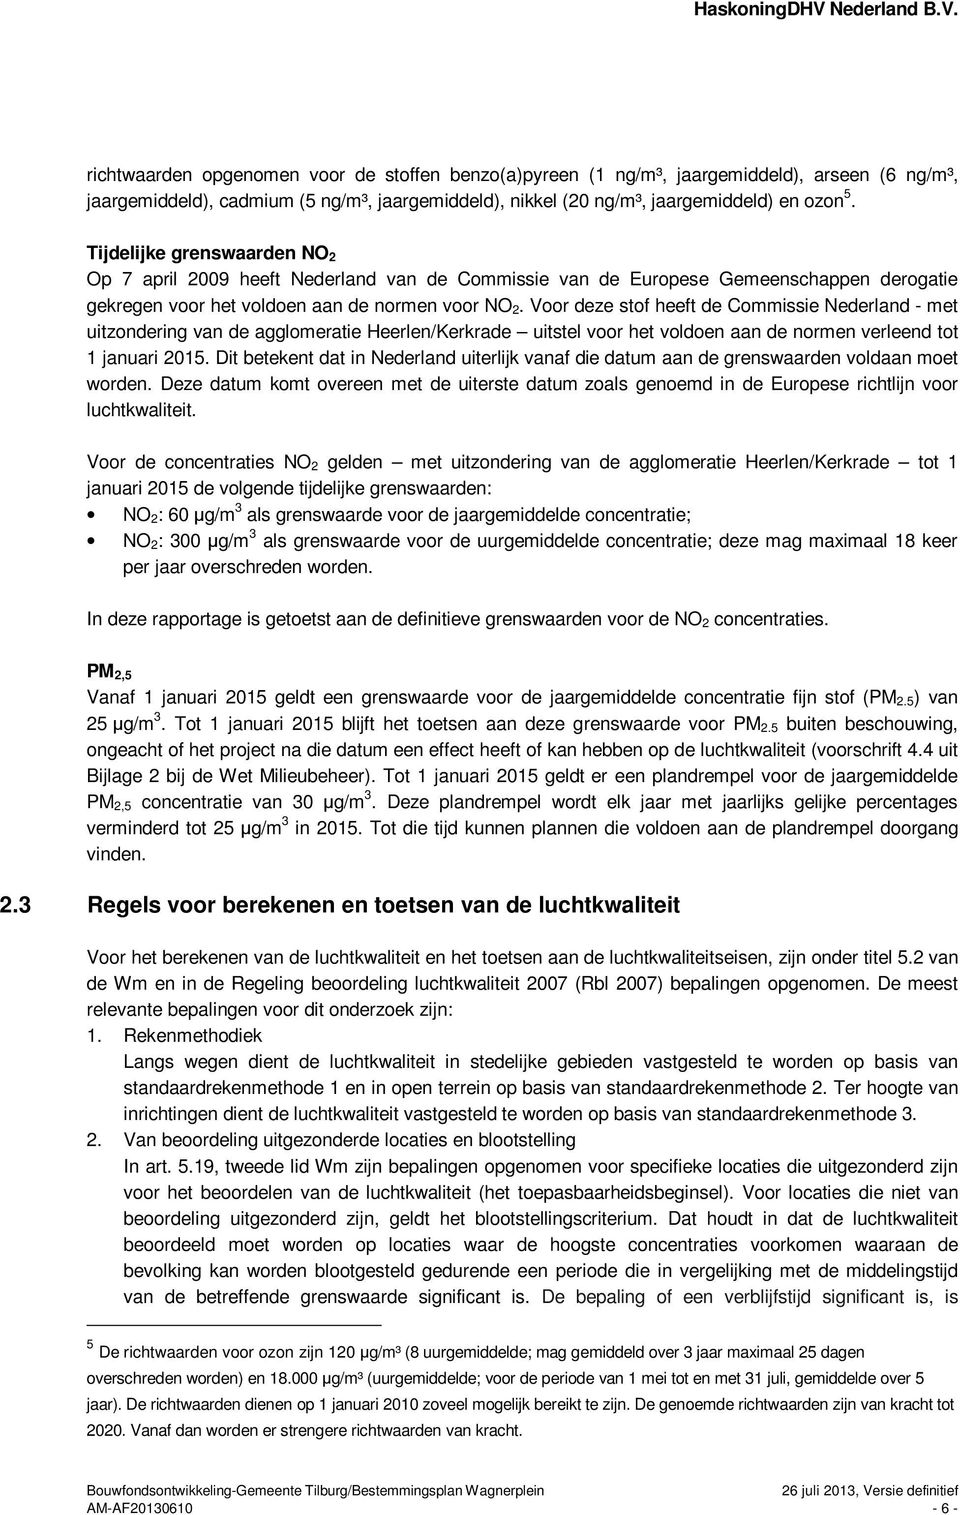 Voor deze stof heeft de Commissie Nederland - met uitzondering van de agglomeratie Heerlen/Kerkrade uitstel voor het voldoen aan de normen verleend tot 1 januari 2015.